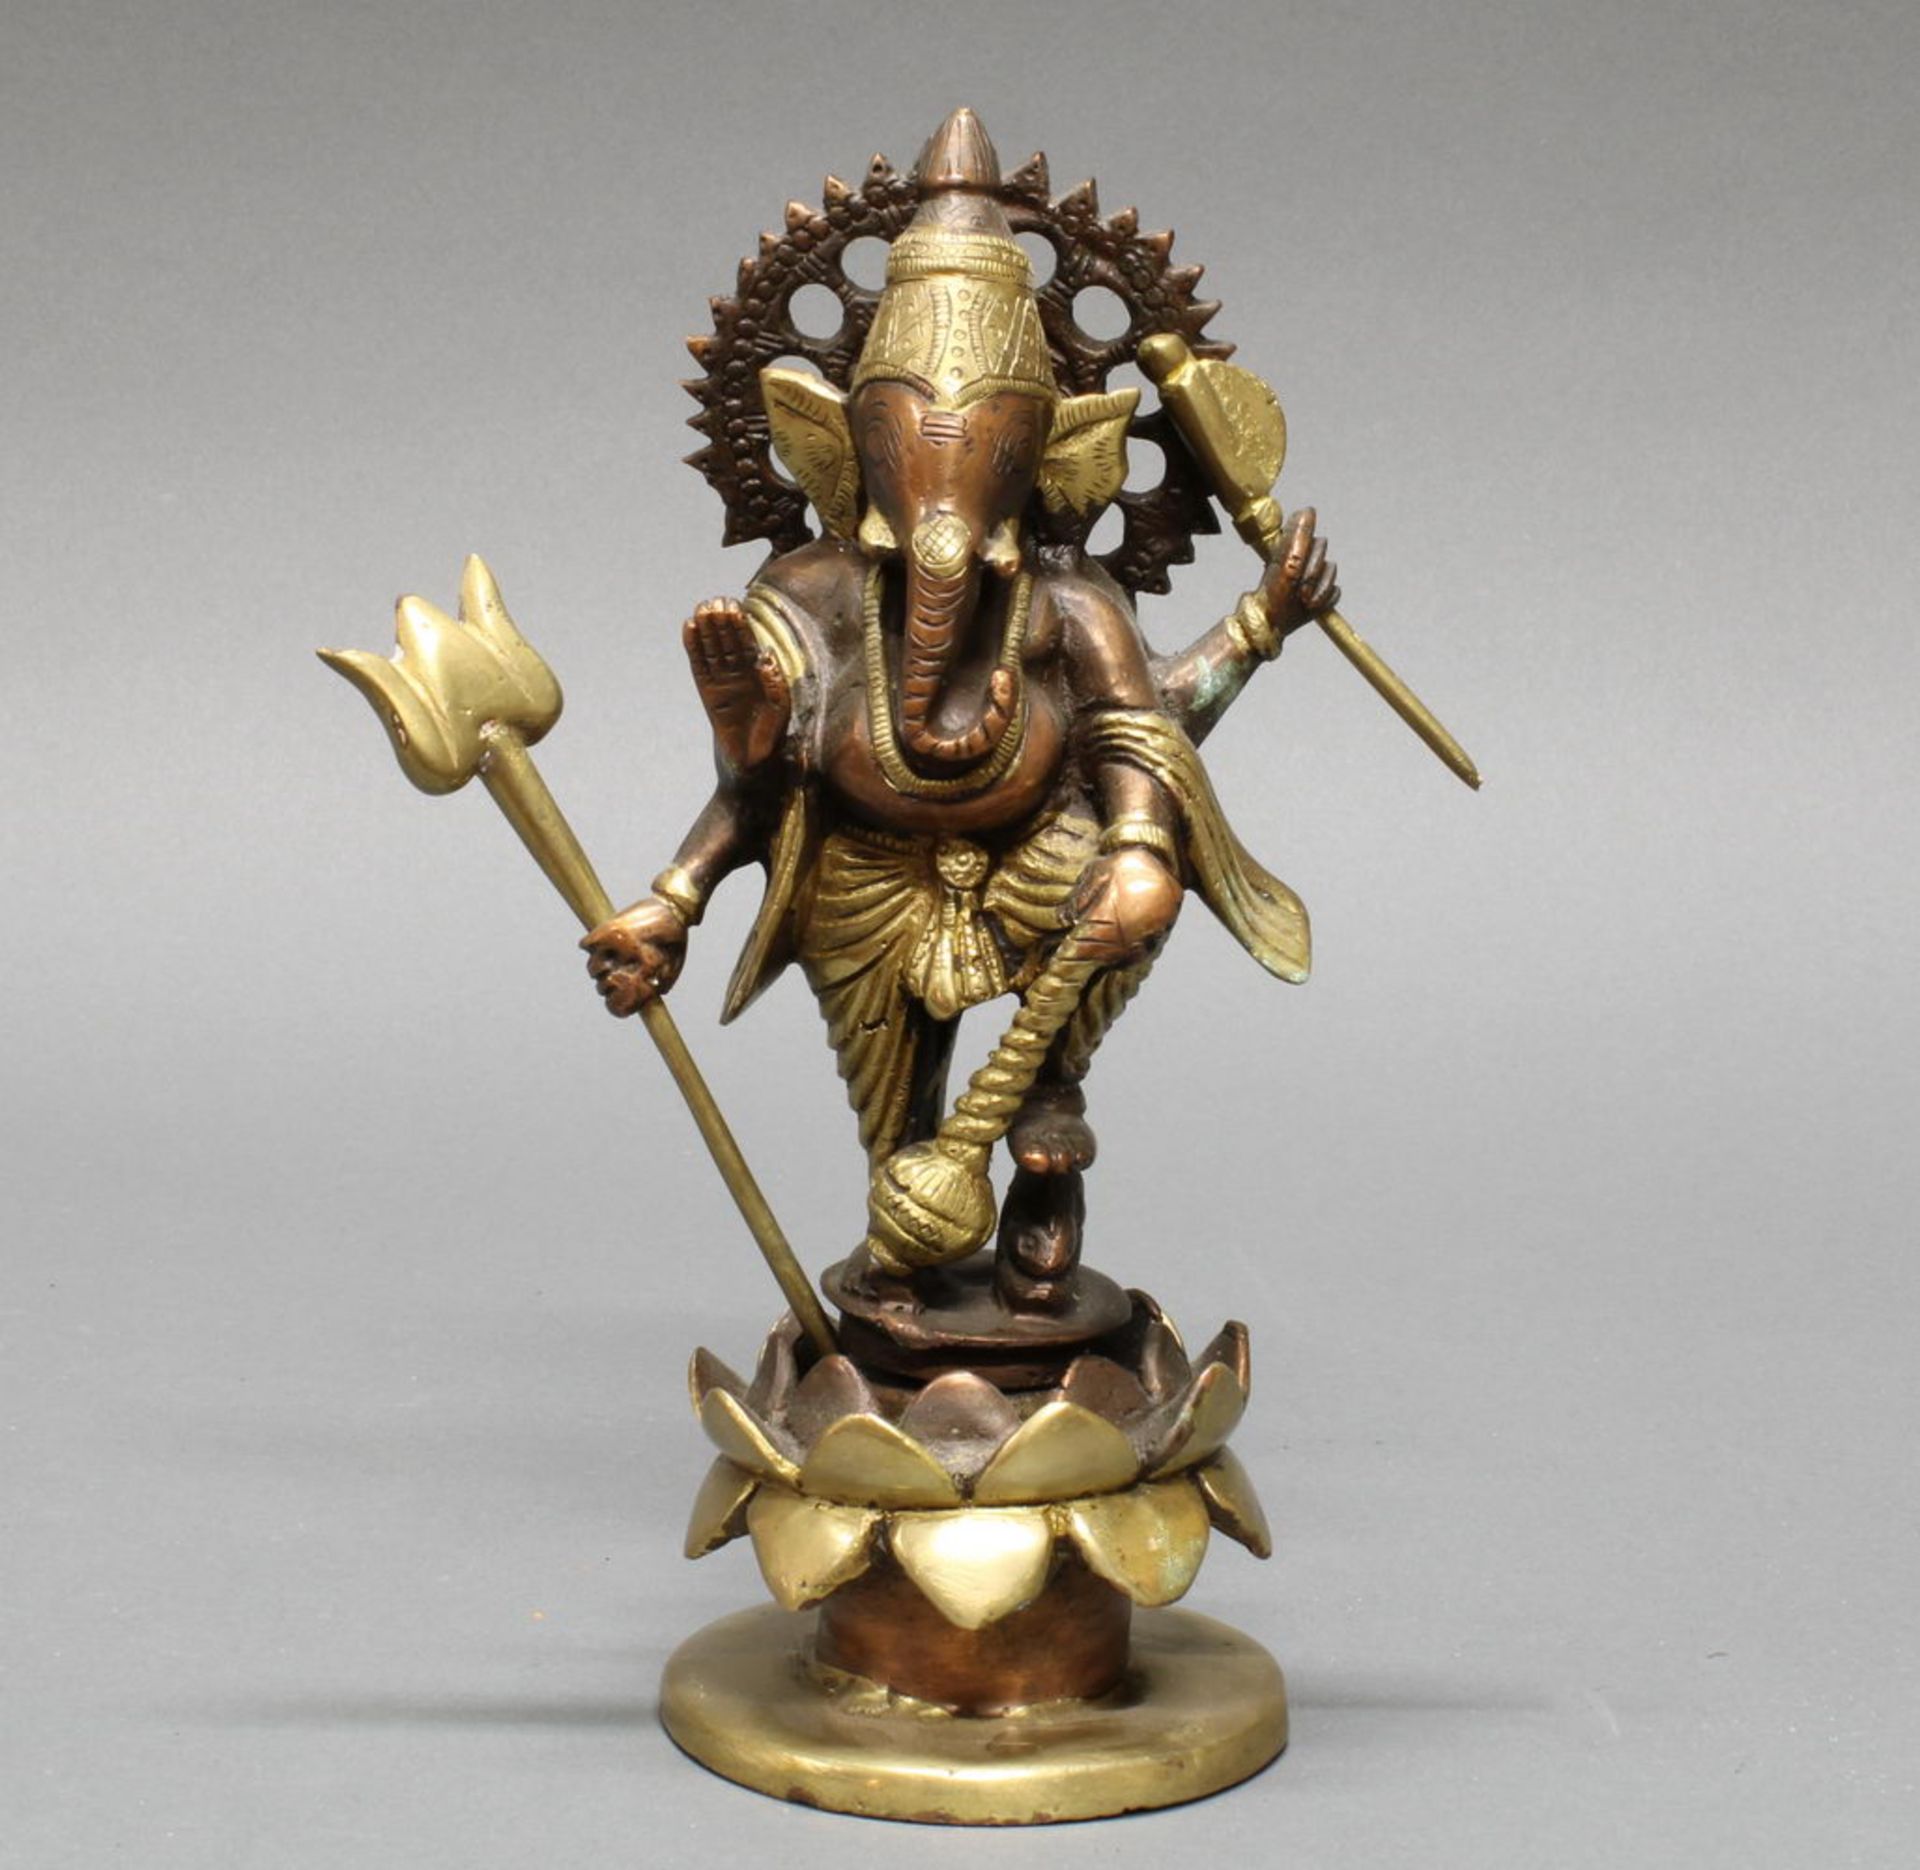 Figur, "Ganesha", Indien, 20. Jh., Kupferbronze, teils vergoldet, auf Lotossockel stehend, 23 cm ho